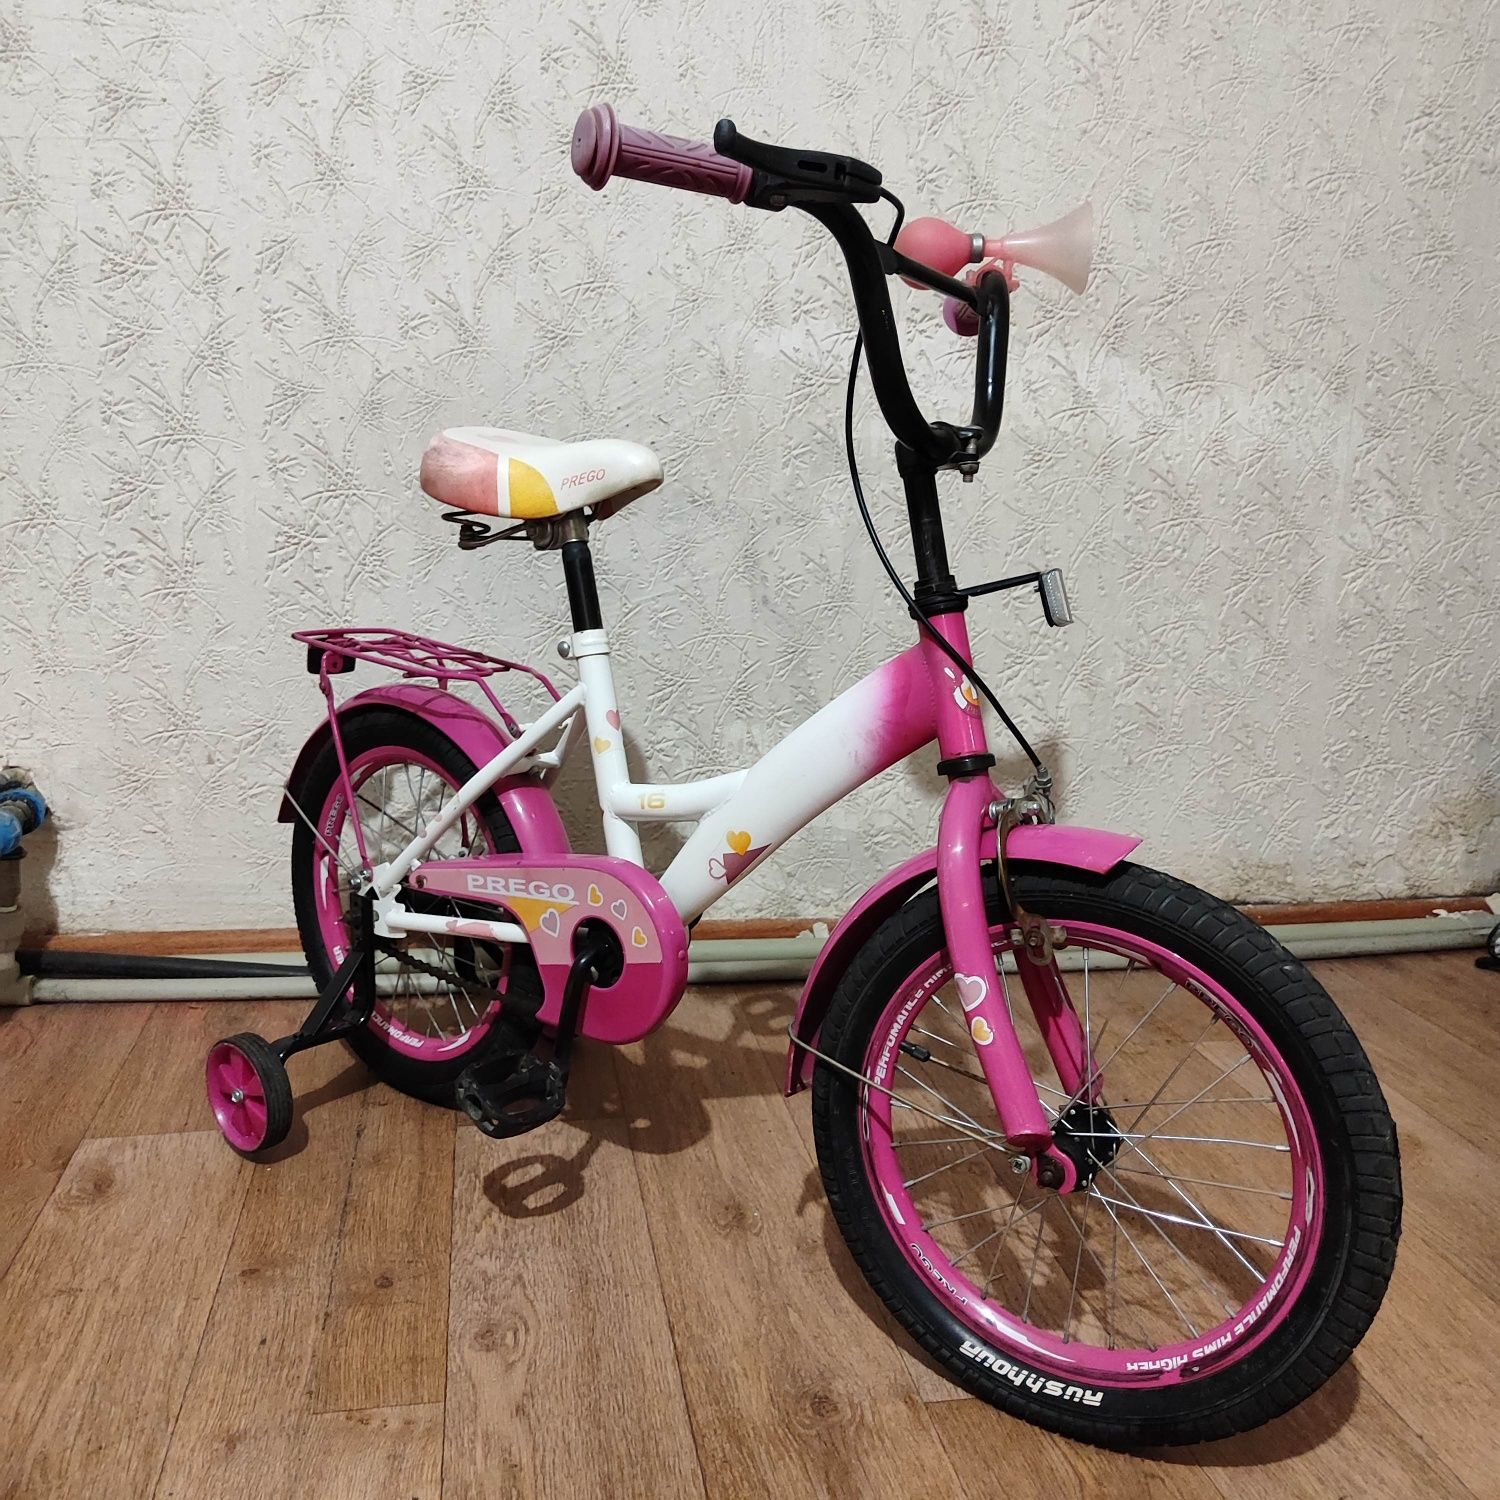 Велосипед велик для девочки. В хорошем состоянии.